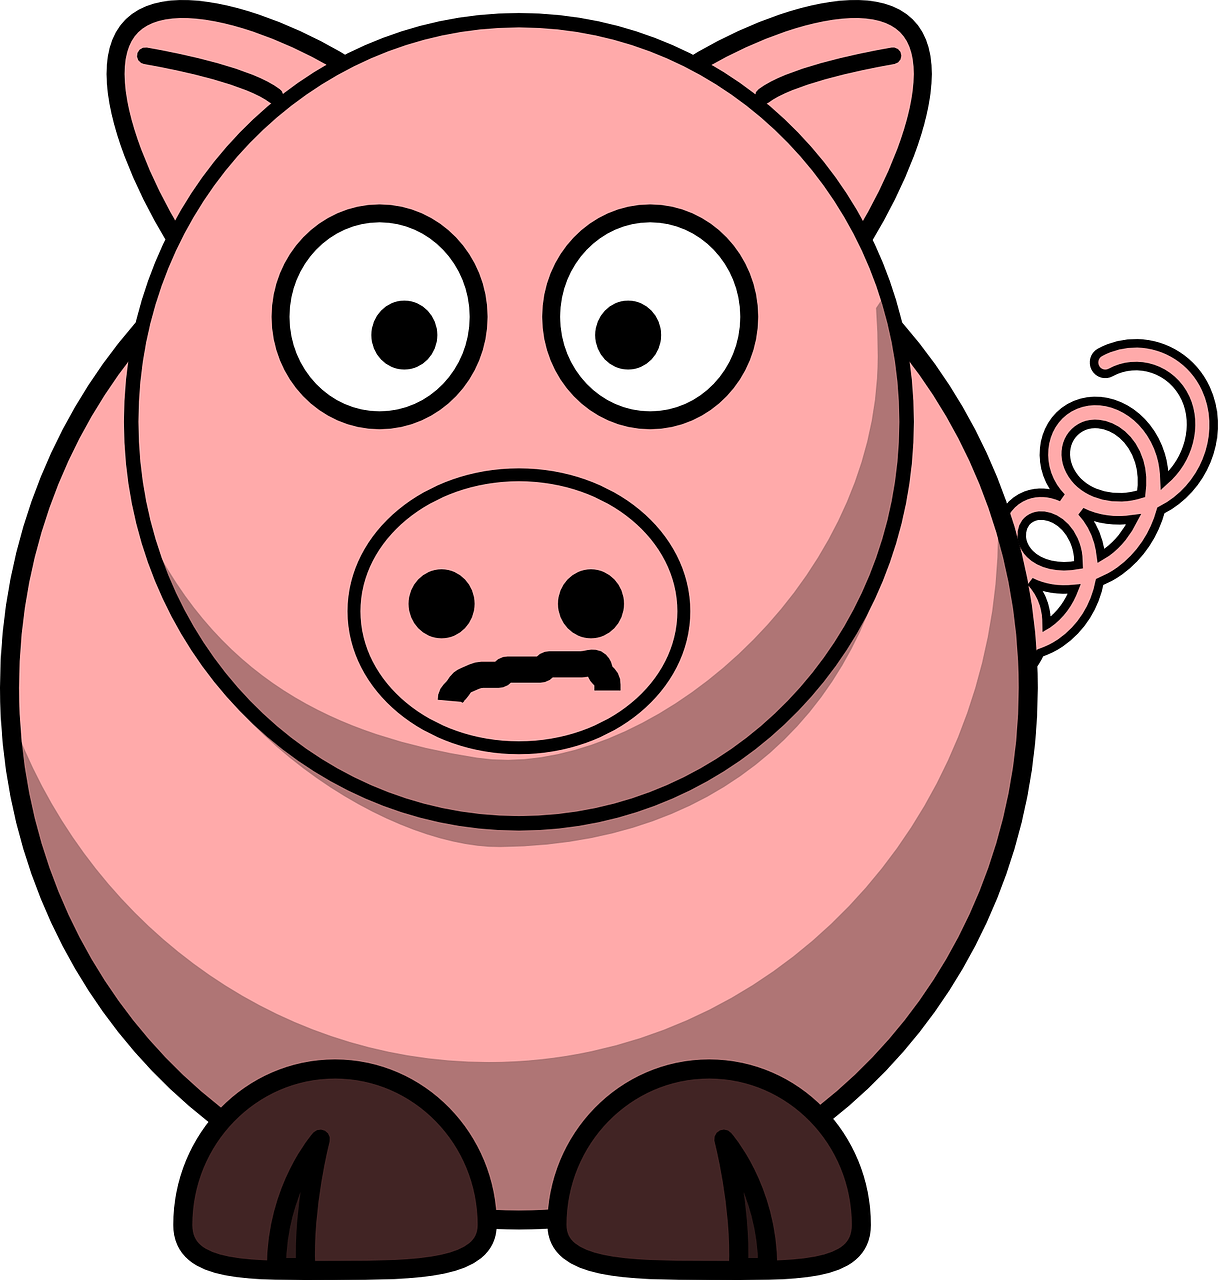 La imagen muestra un cerdo.